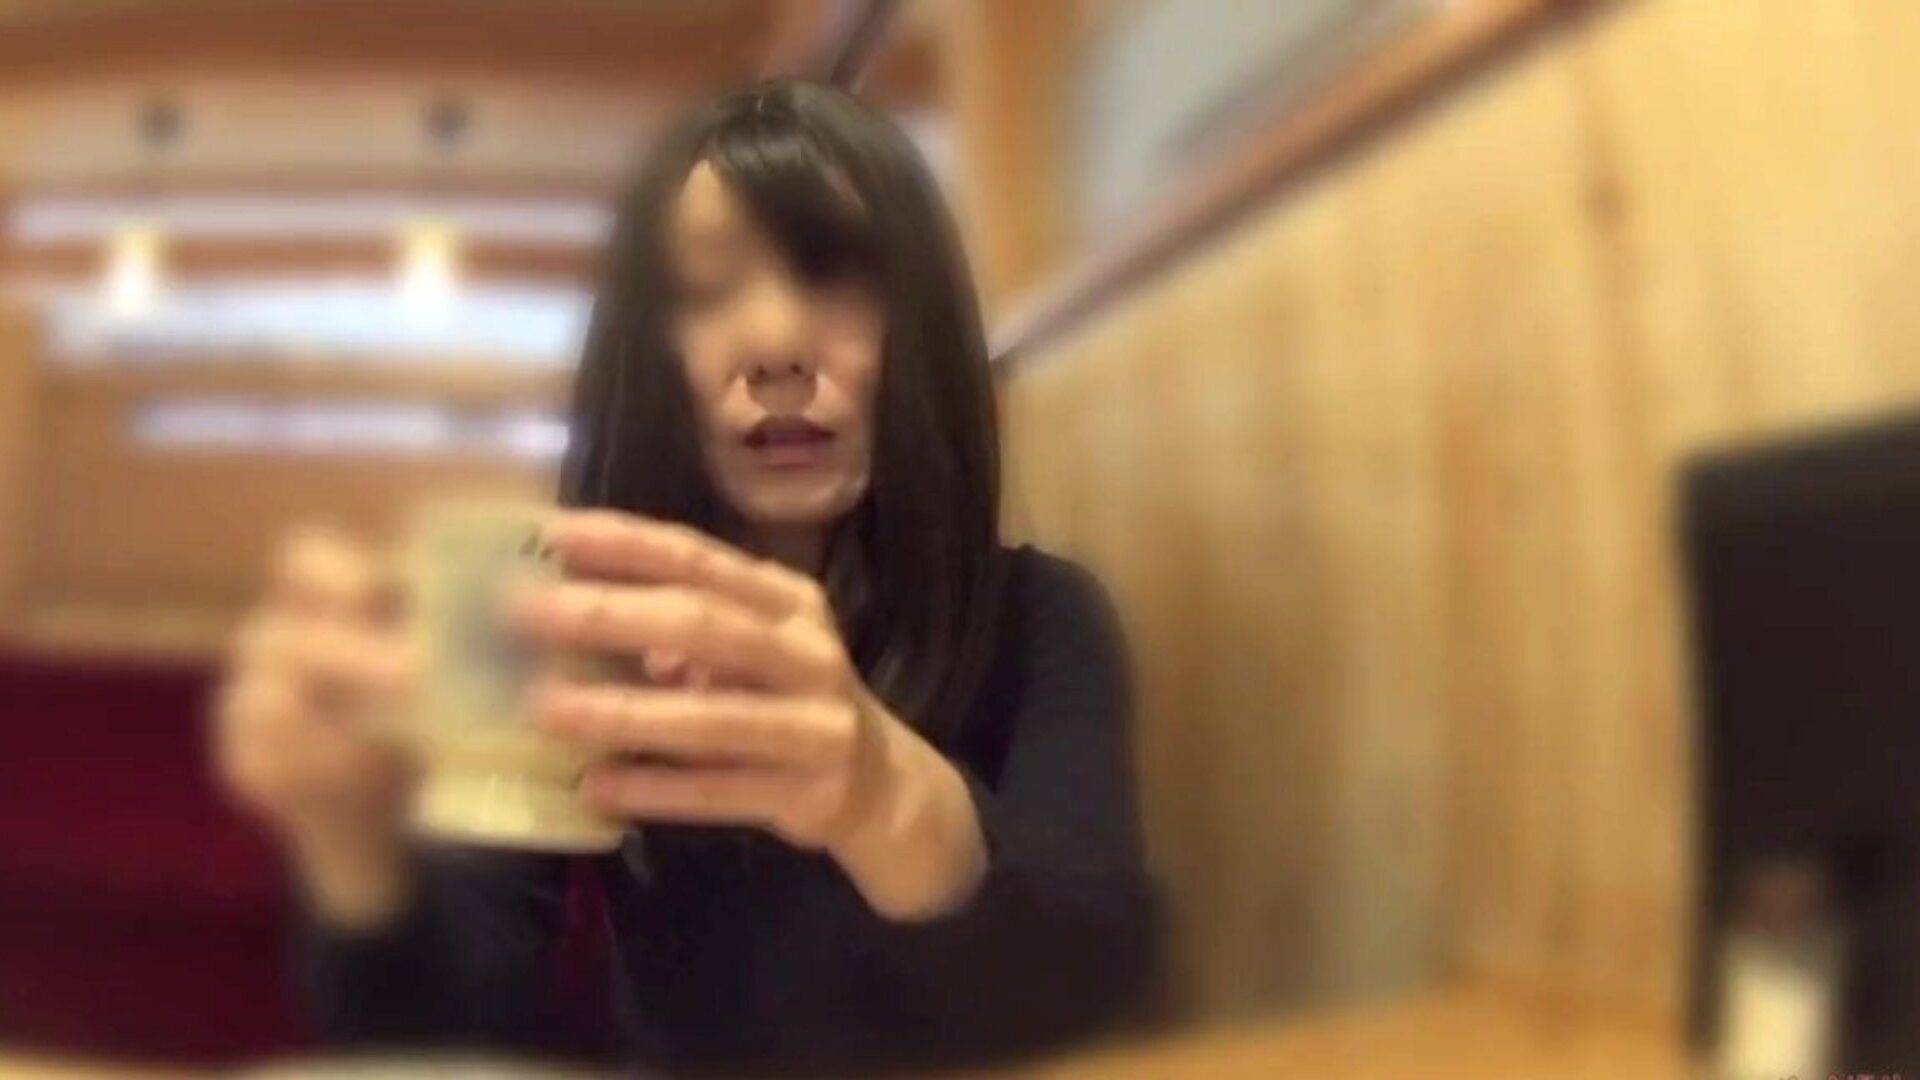 κούκος σύζυγος έβγαλε τα εσώρουχά της στο καφενείο: δωρεάν πορνό 60 ρολόι σύζυγος κούκος έβγαλε τα εσώρουχά της στο καφενείο βίντεο στο xhamster - η απόλυτη γοητεία των δωρεάν ασιατικών ιαπωνικών hd gonzo porn tube videos